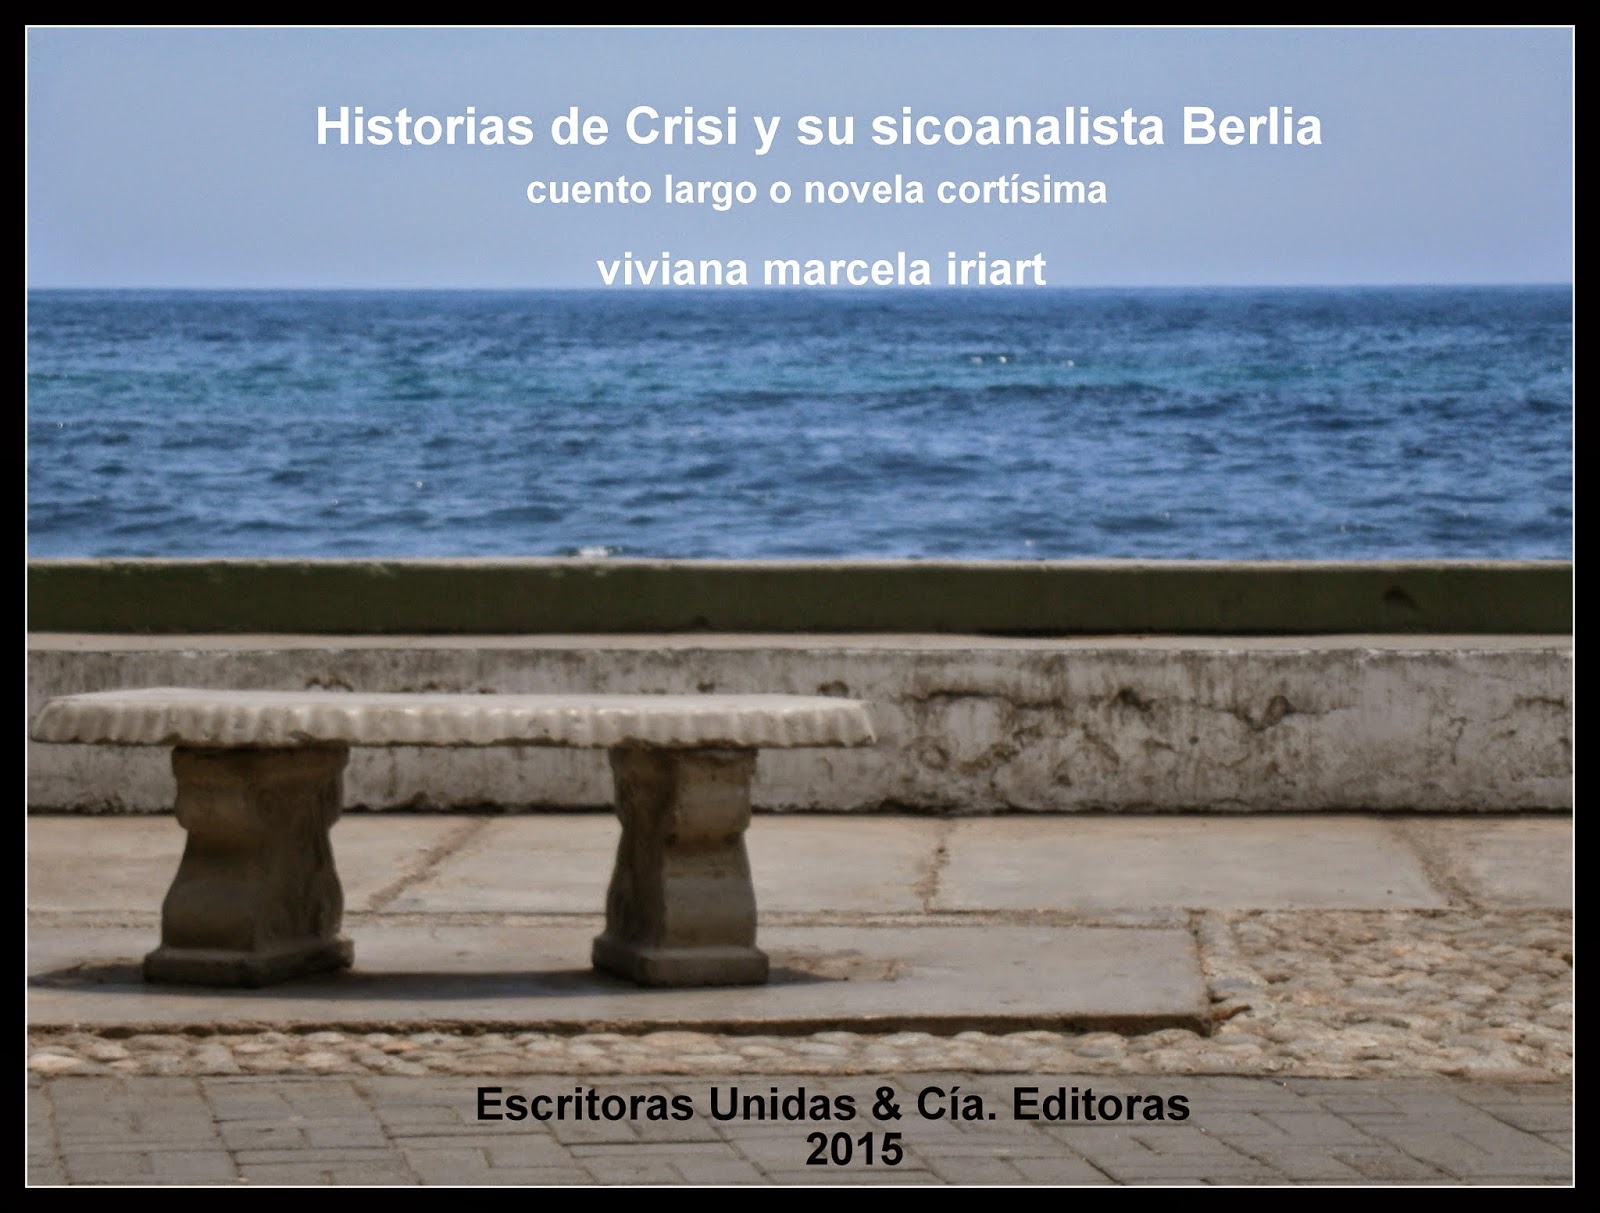 HISTORIAS DE CRISI Y SU SICOANALISTA BERLIA, de Viviana Marcela Iriart